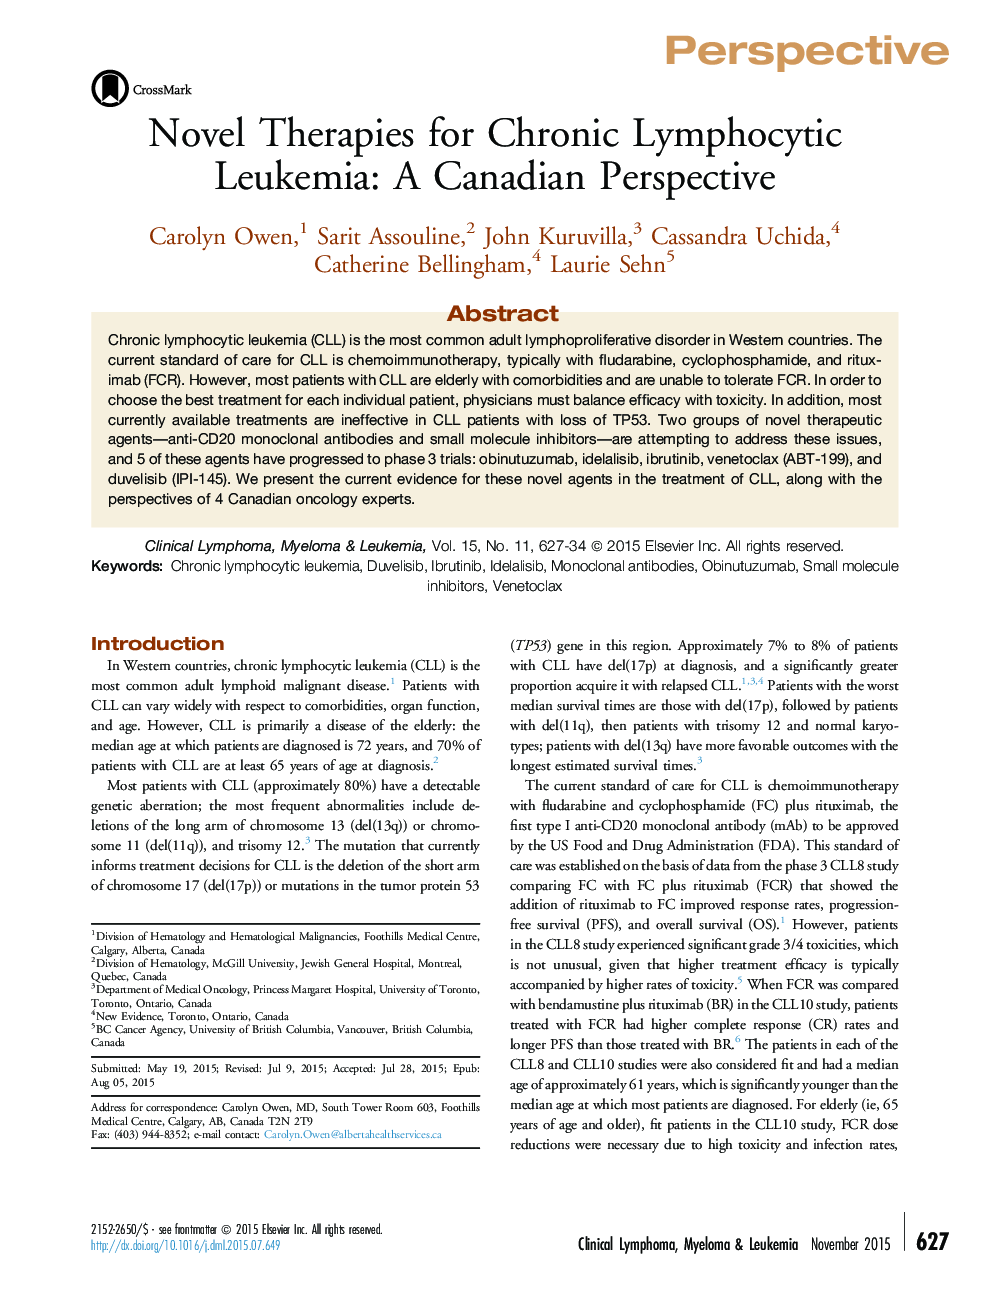 درمان های نوین برای لوسمی لنفوسیتی مزمن: دیدگاه کانادایی 